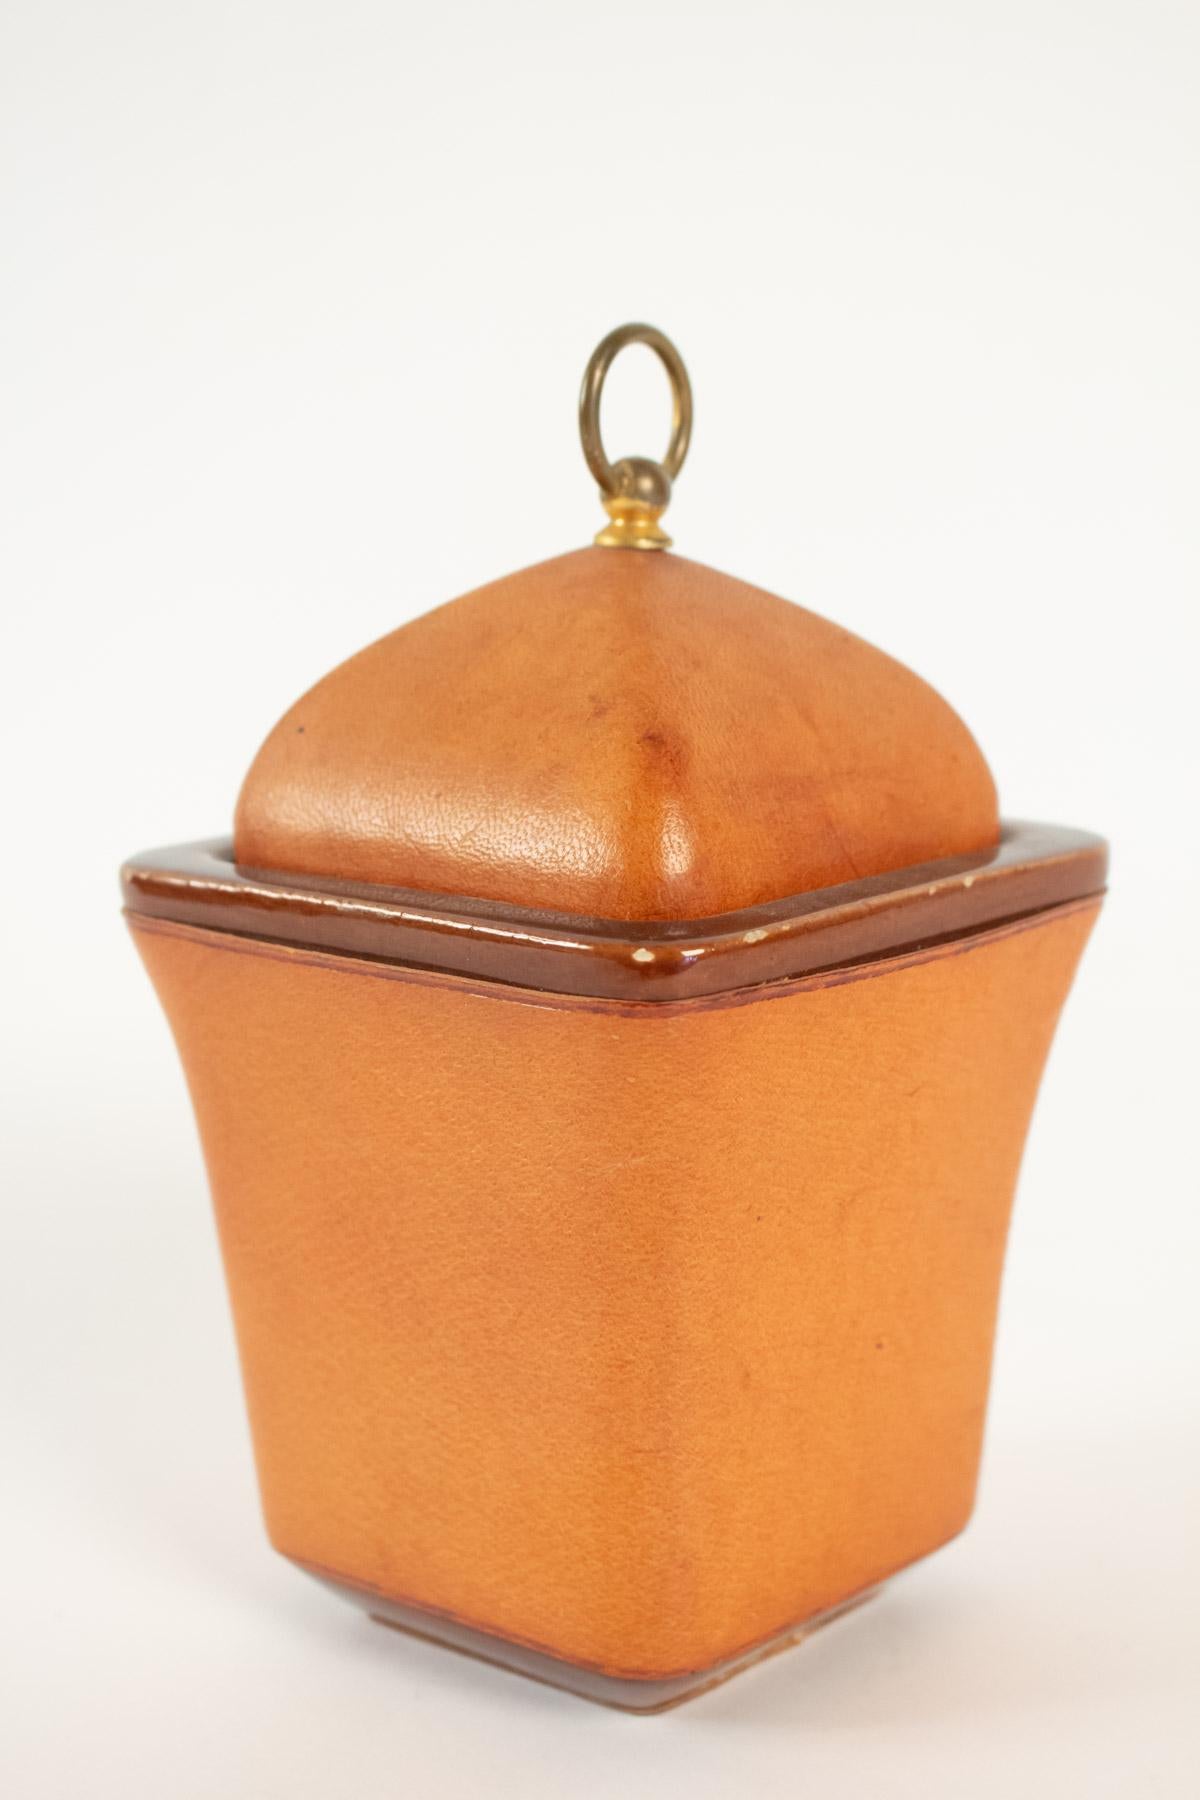 Tobacco pot, cladding sheathed leather Maison Longchamp brand in Paris, 20th century. 
Measures: H 20cm, W 12cm, W 12cm.